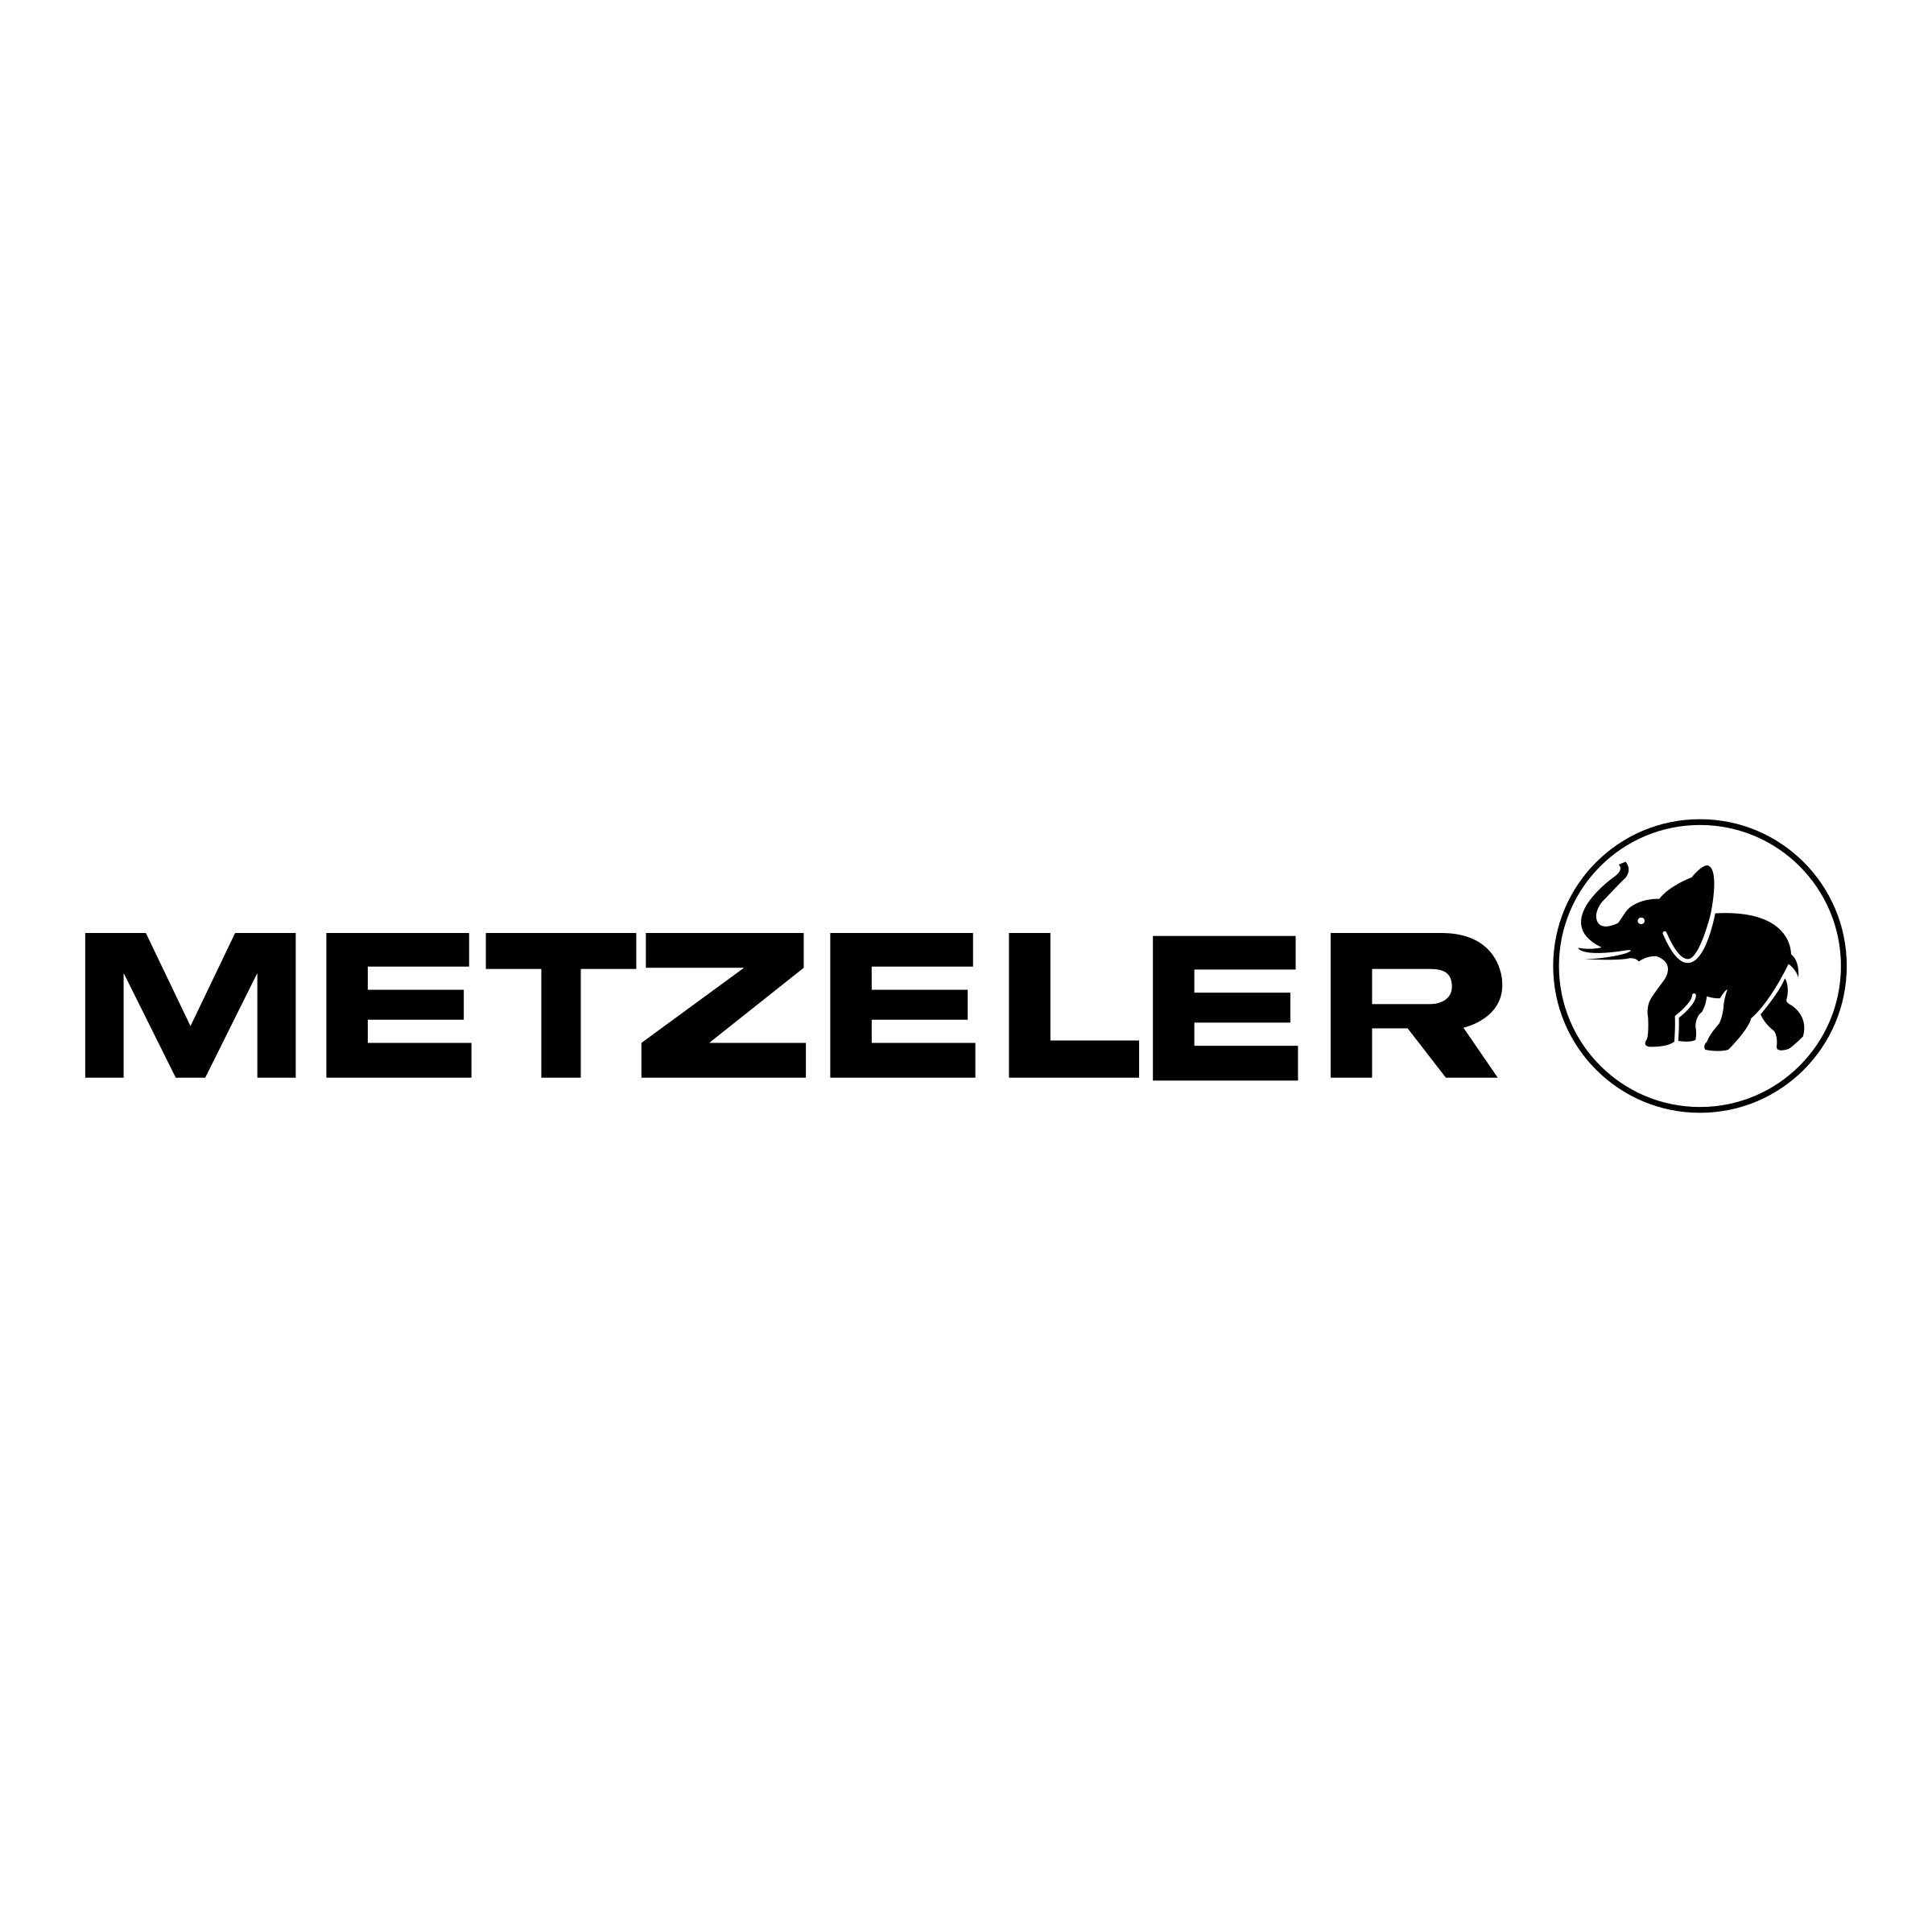 metzeler-logo-logodix